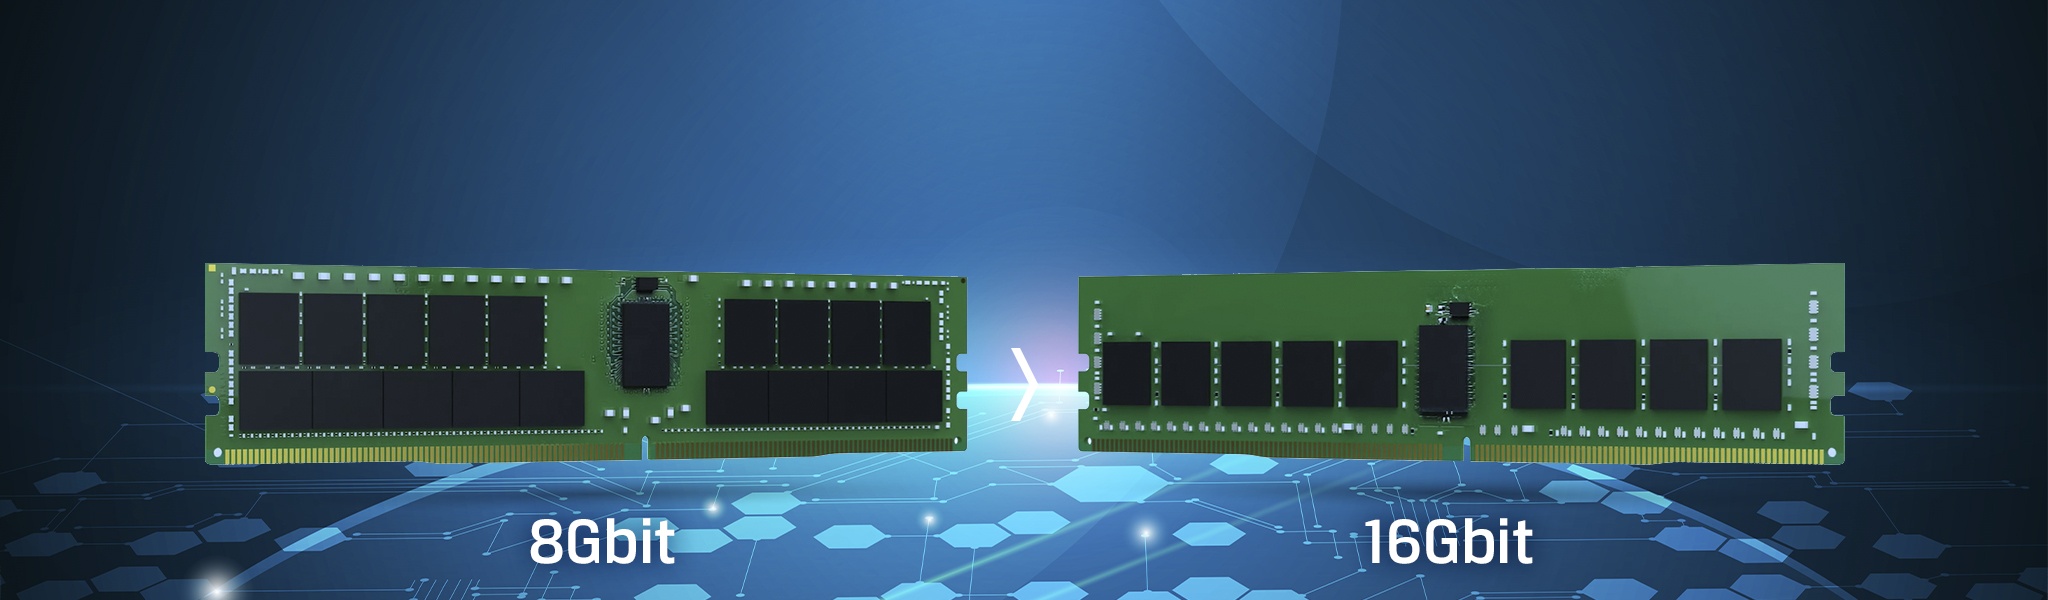 Ya ha llegado la DRAM DDR4 de nueva generación de 16 Gbits